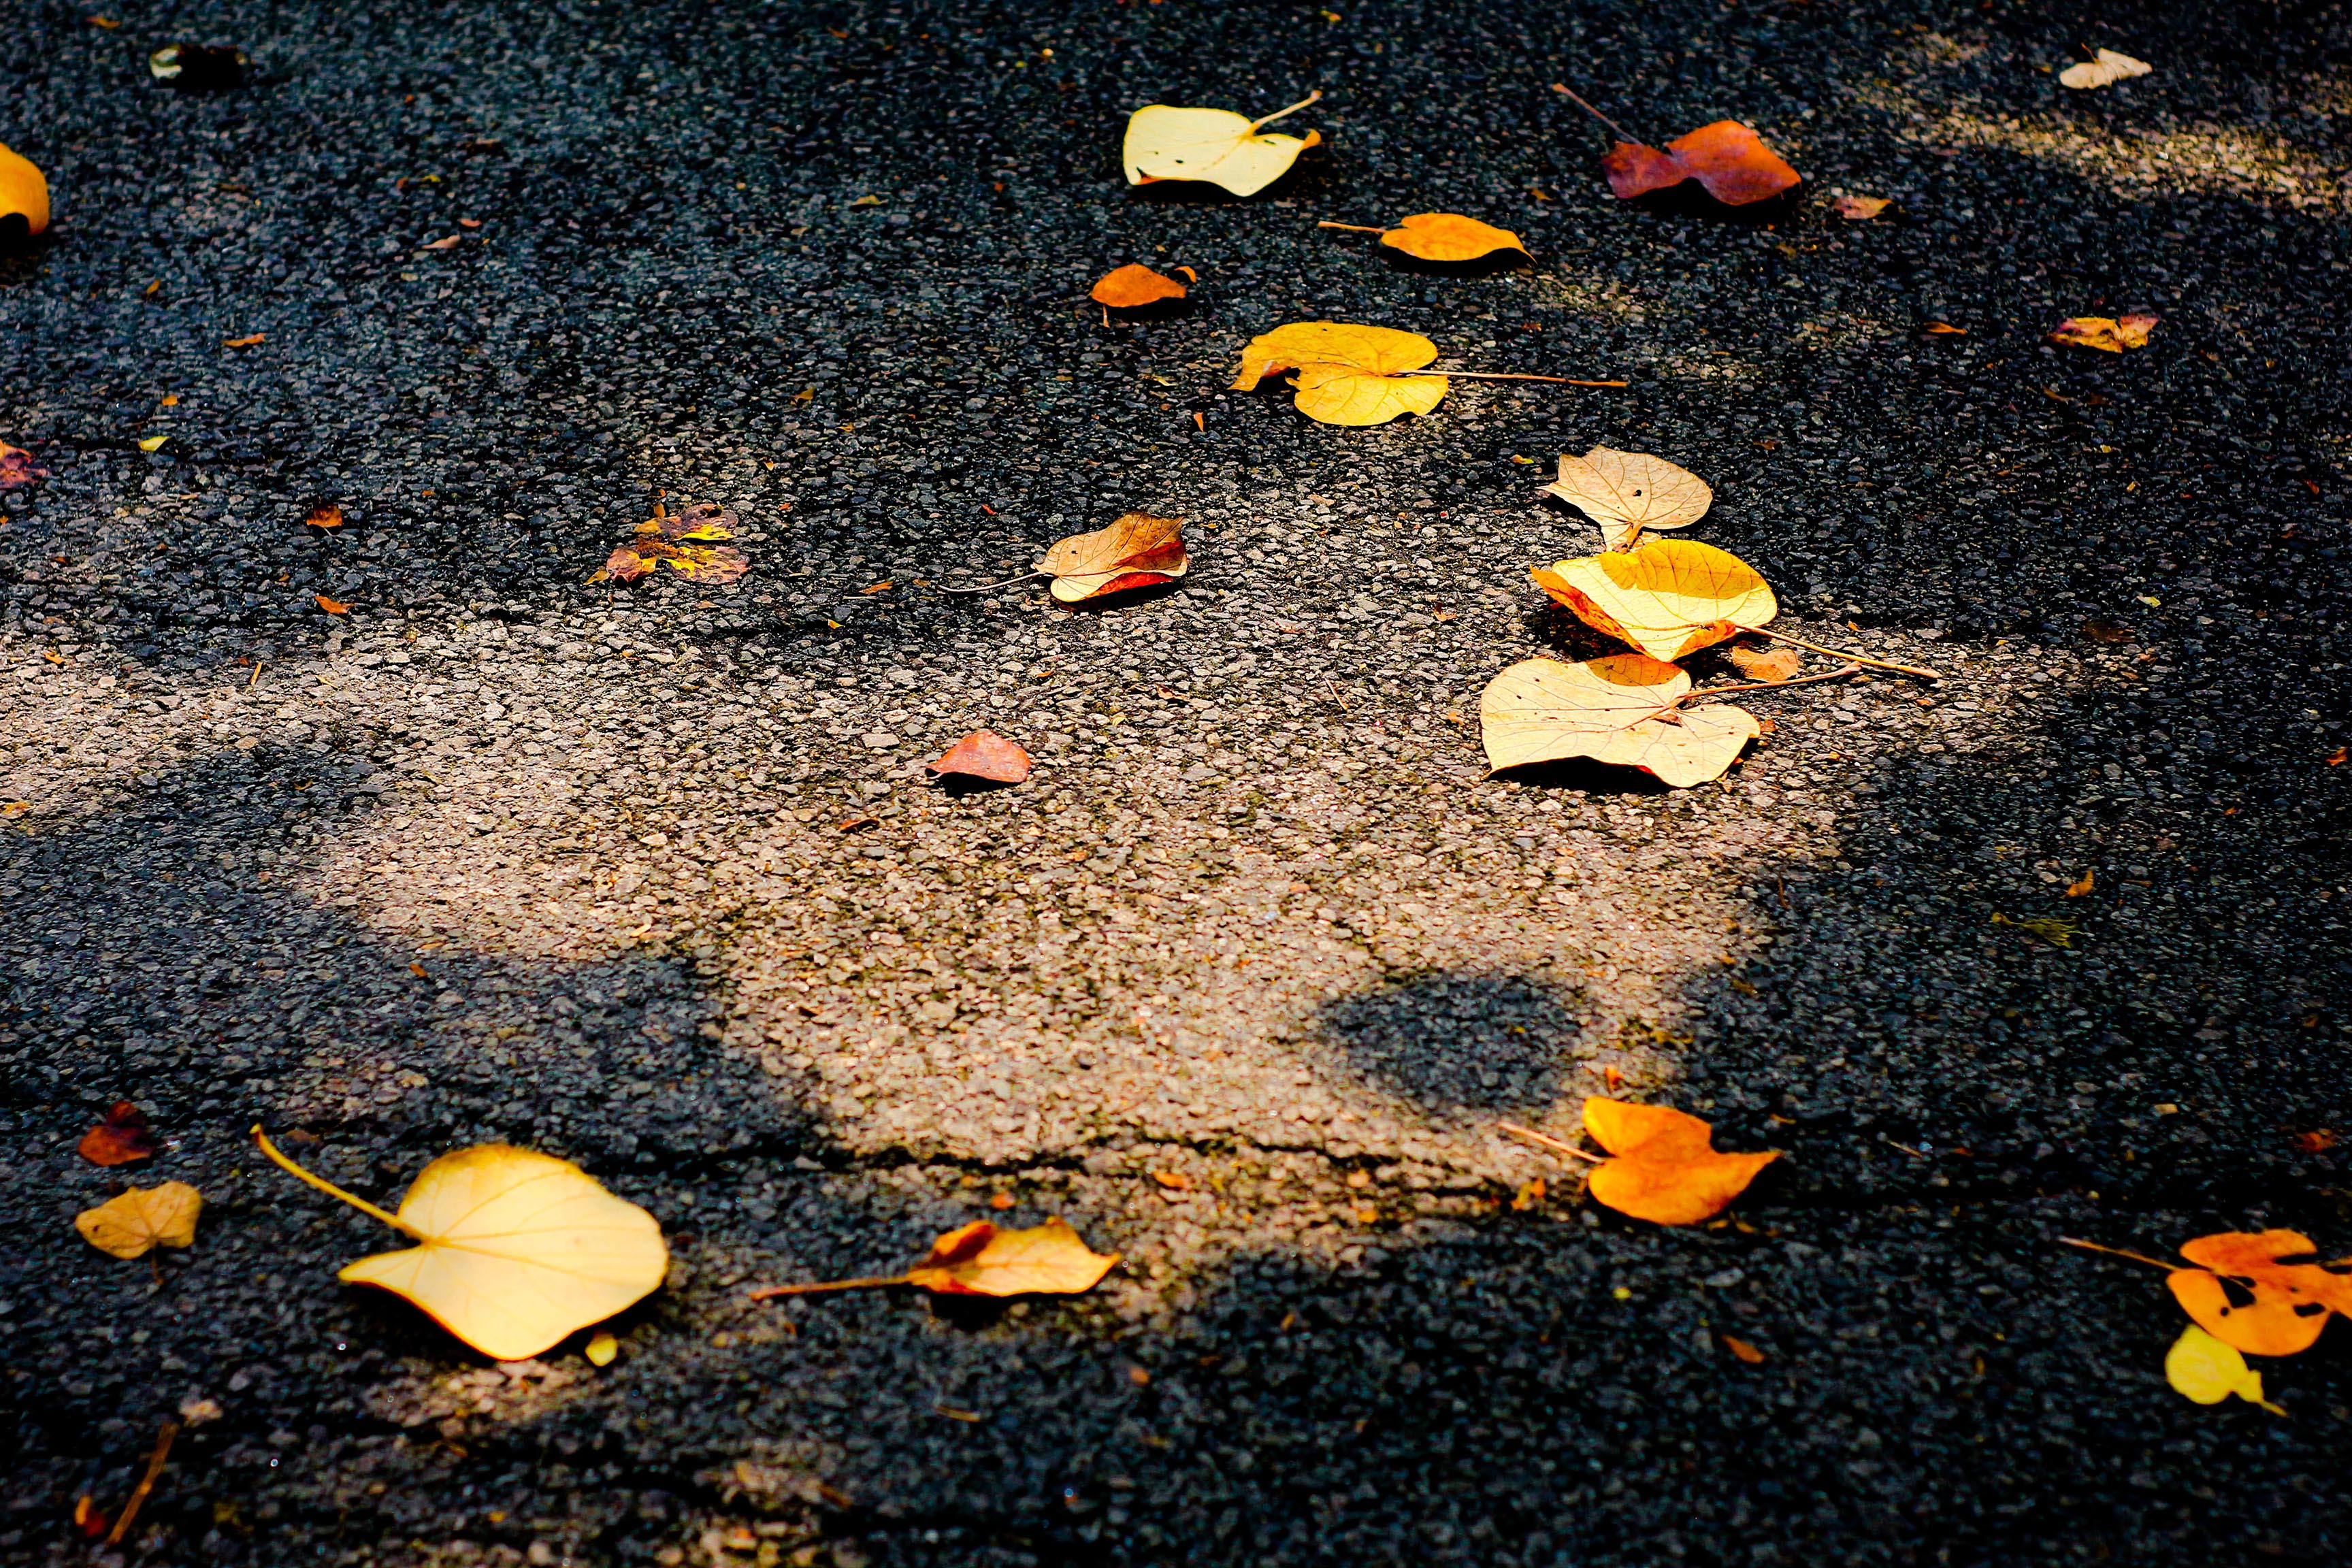 秋天小路上的落叶-壁纸图片大全